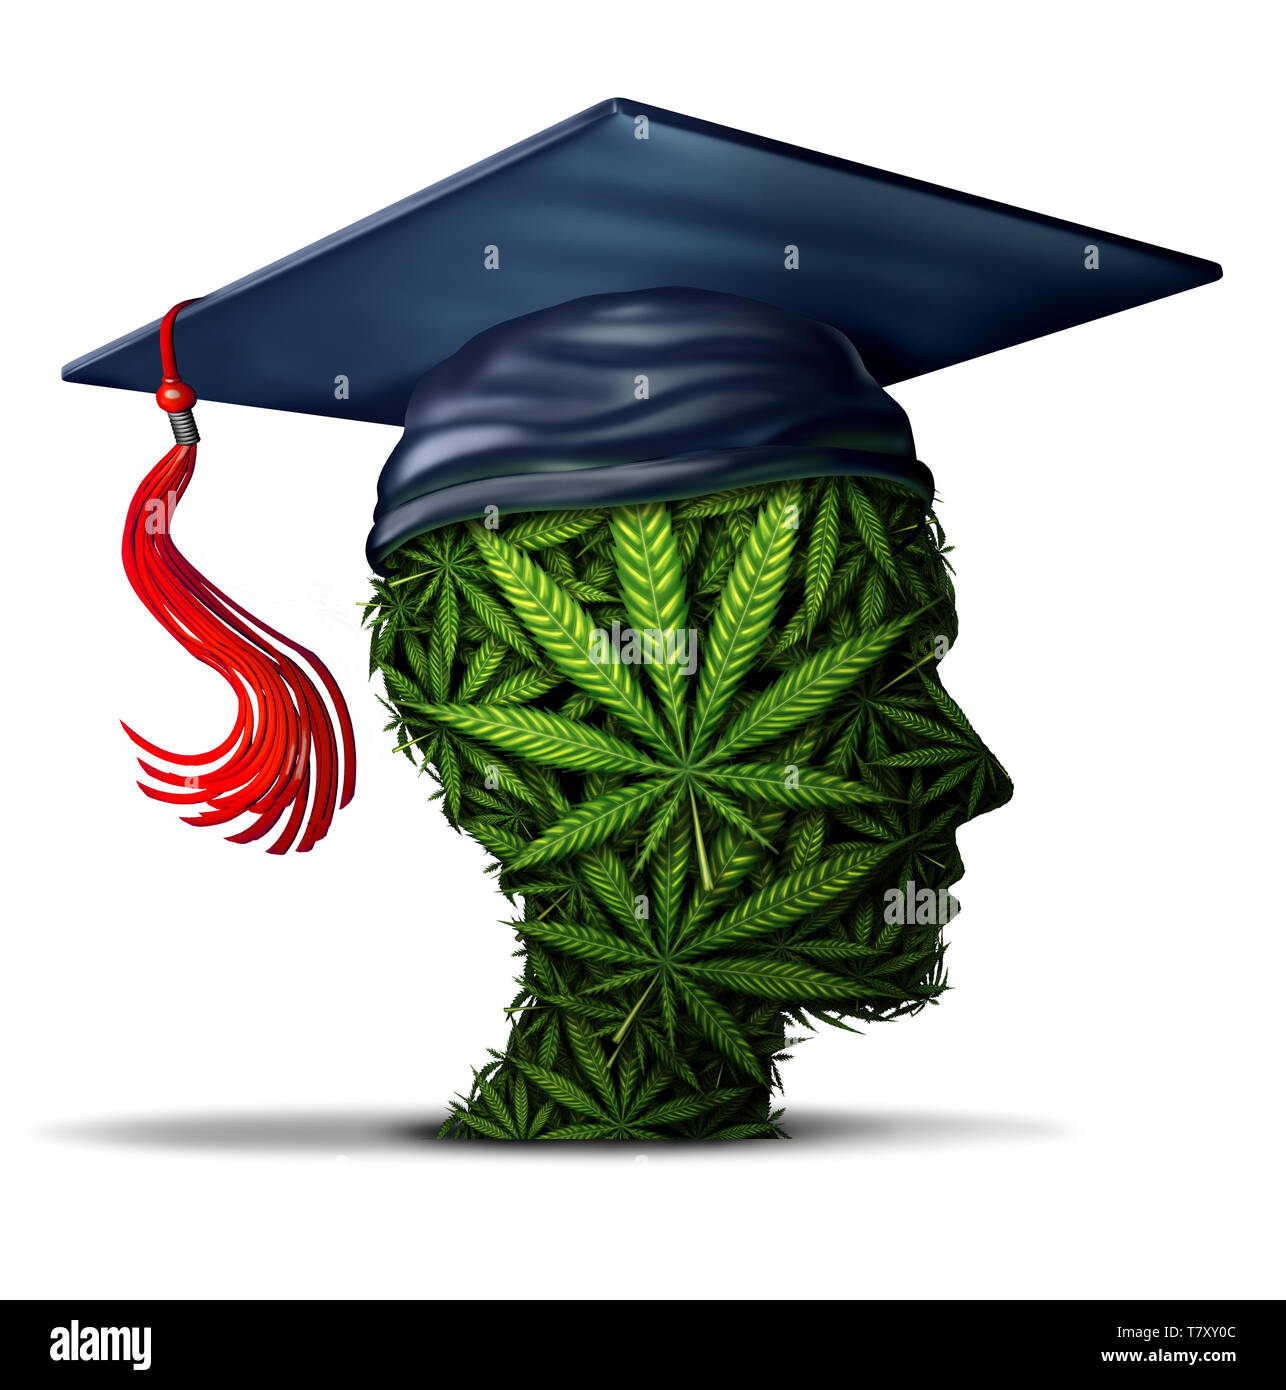 L'apprentissage et de cannabis marijuana étudiant à l'école ou de l'éducation pour en savoir plus sur le désherbage et la question sociale d'obtenir des médicaments à l'université et sur le campus. Banque D'Images